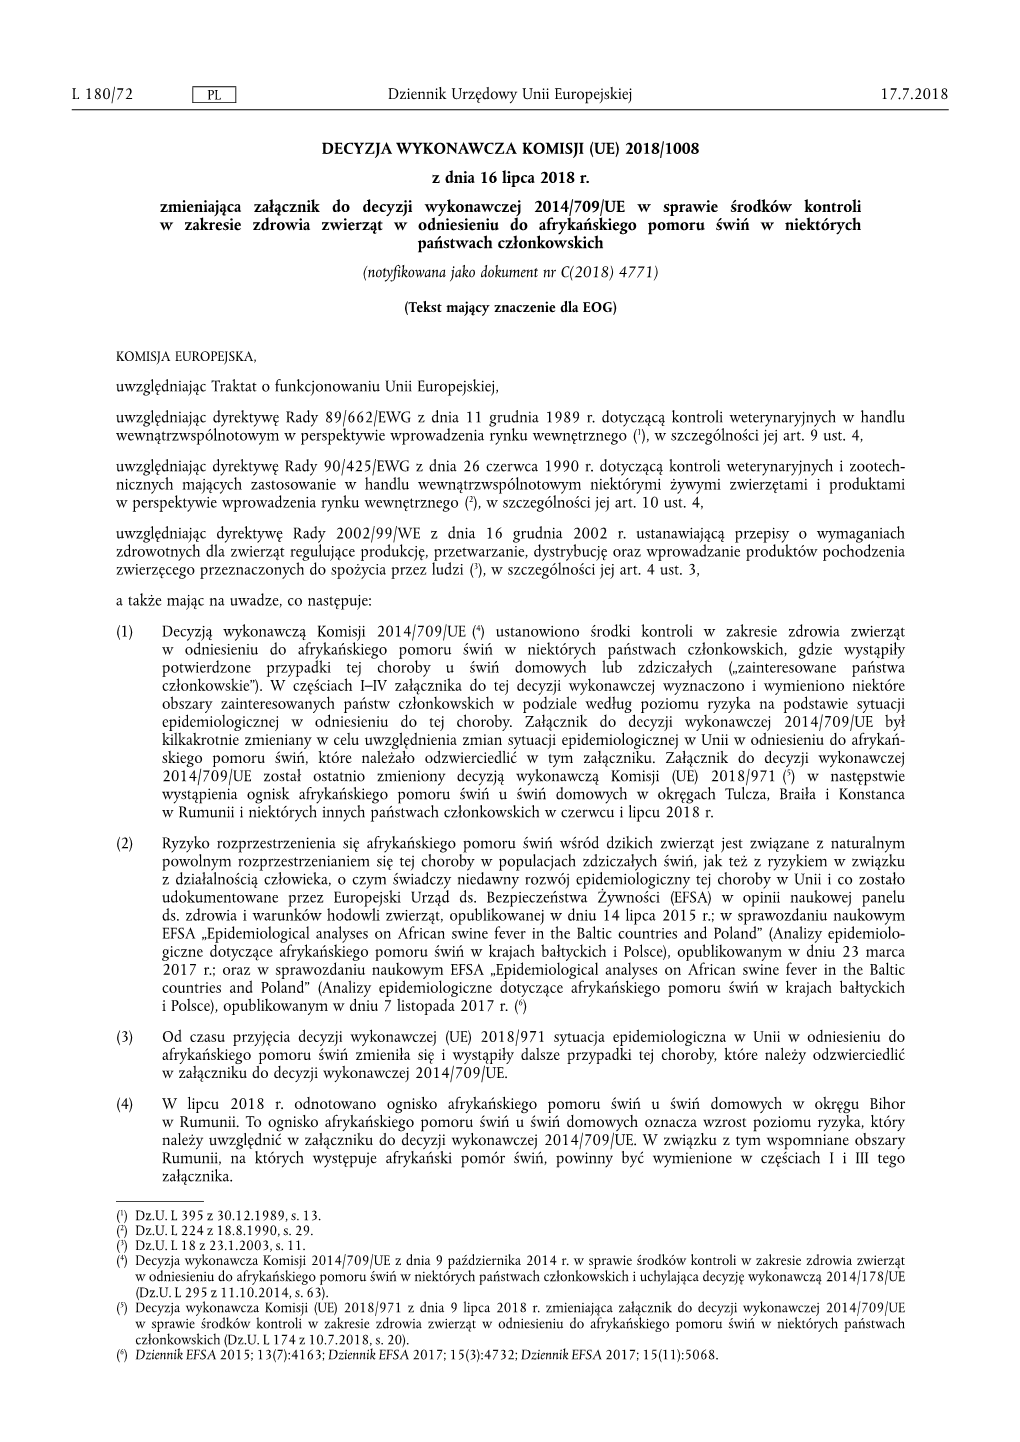 Decyzja Wykonawcza Komisji (Ue) 2018/ 1008